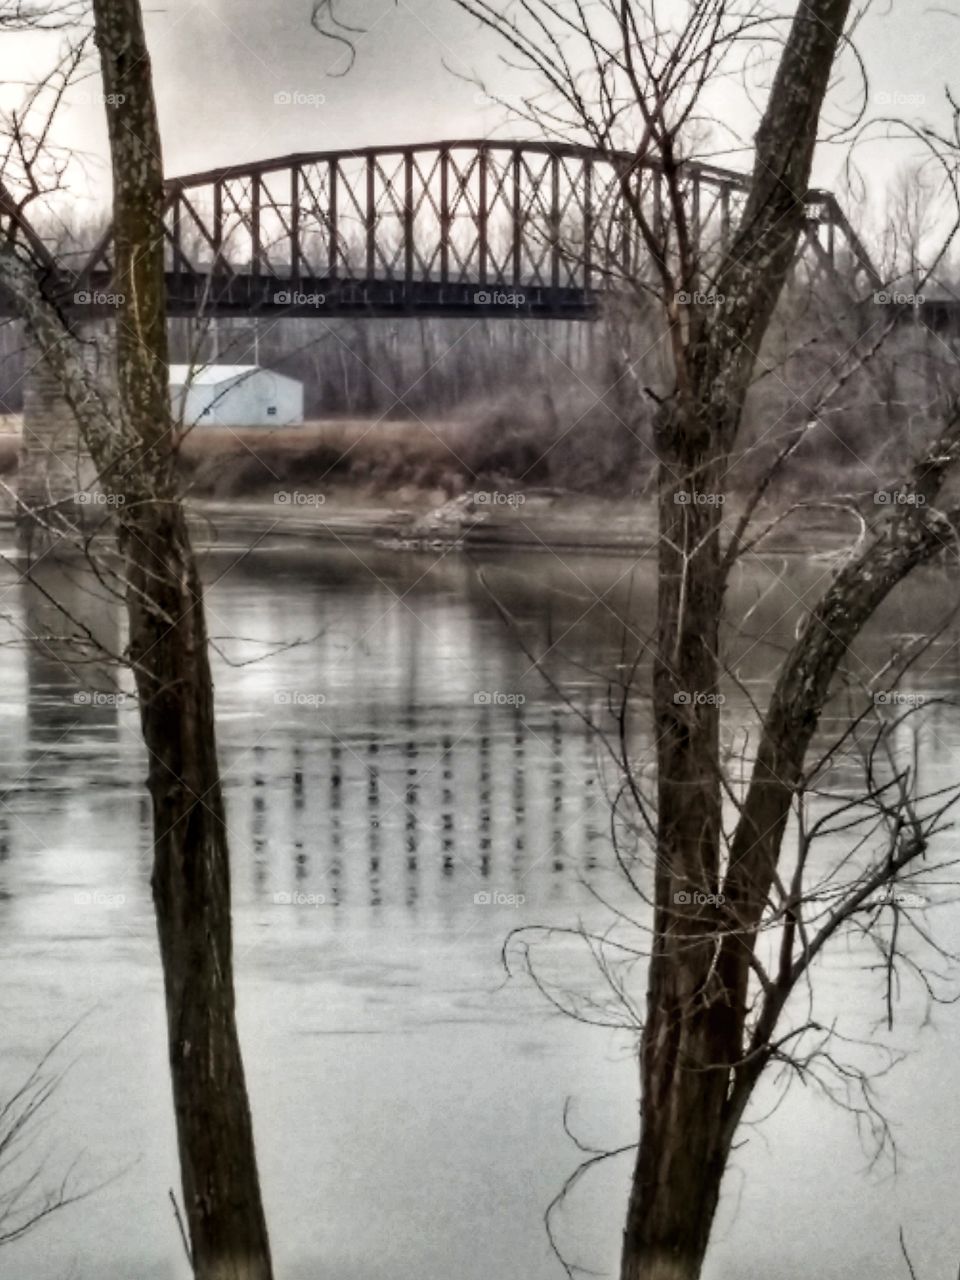 Missouri River at Glasgow, Mo.